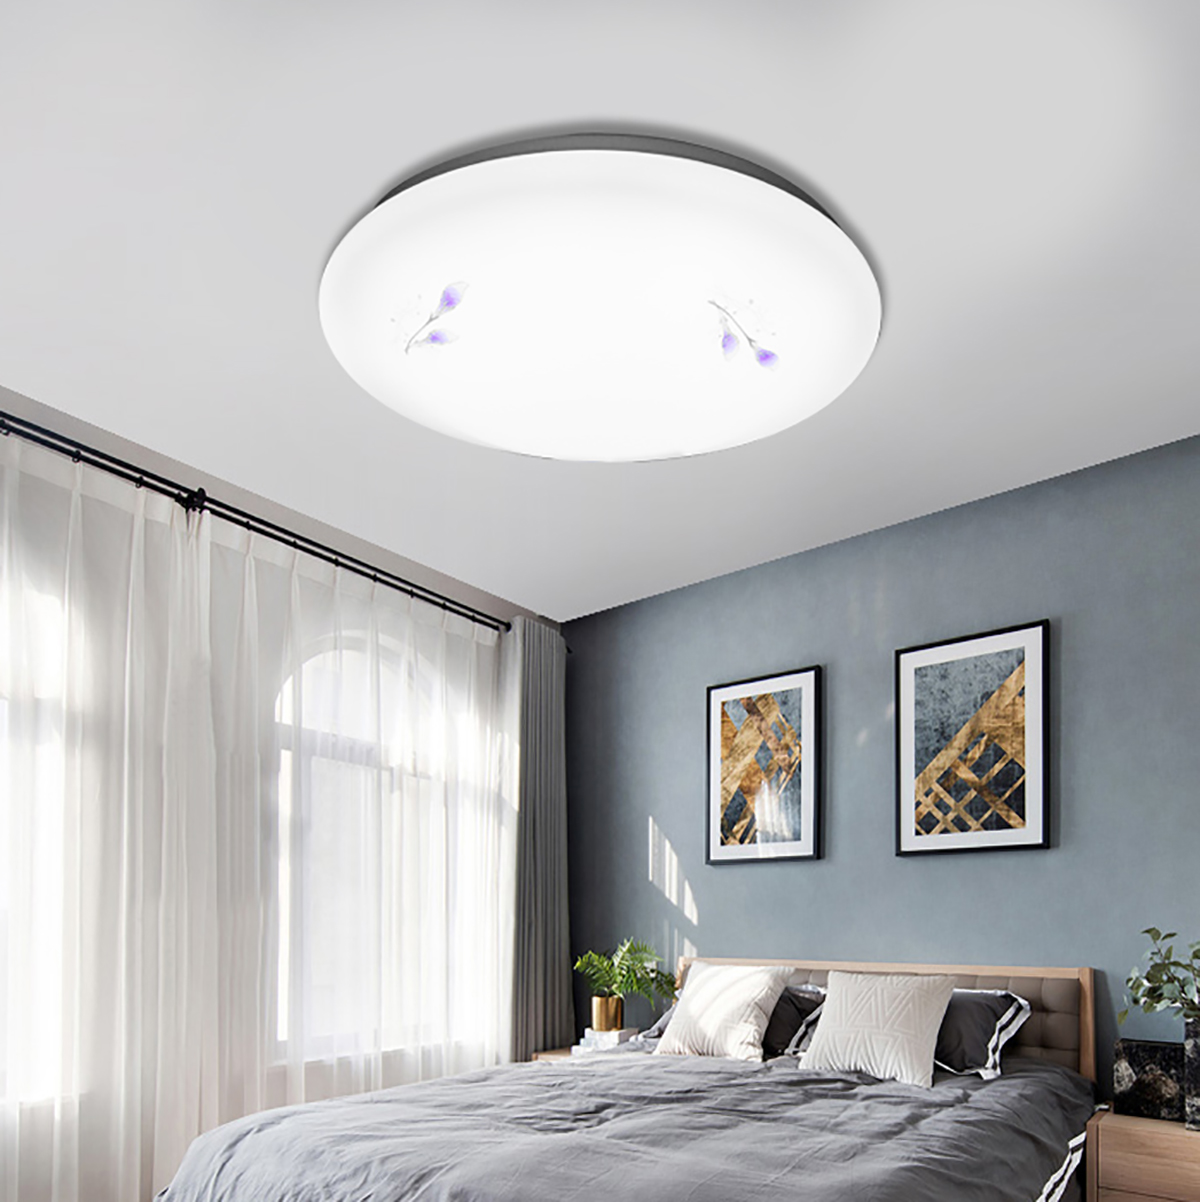 30W-85V-265V-LED-Ceiling-Light-Thin-Flush-Mount-Fixture-Lamps-Bedroom-Home-1763017-6